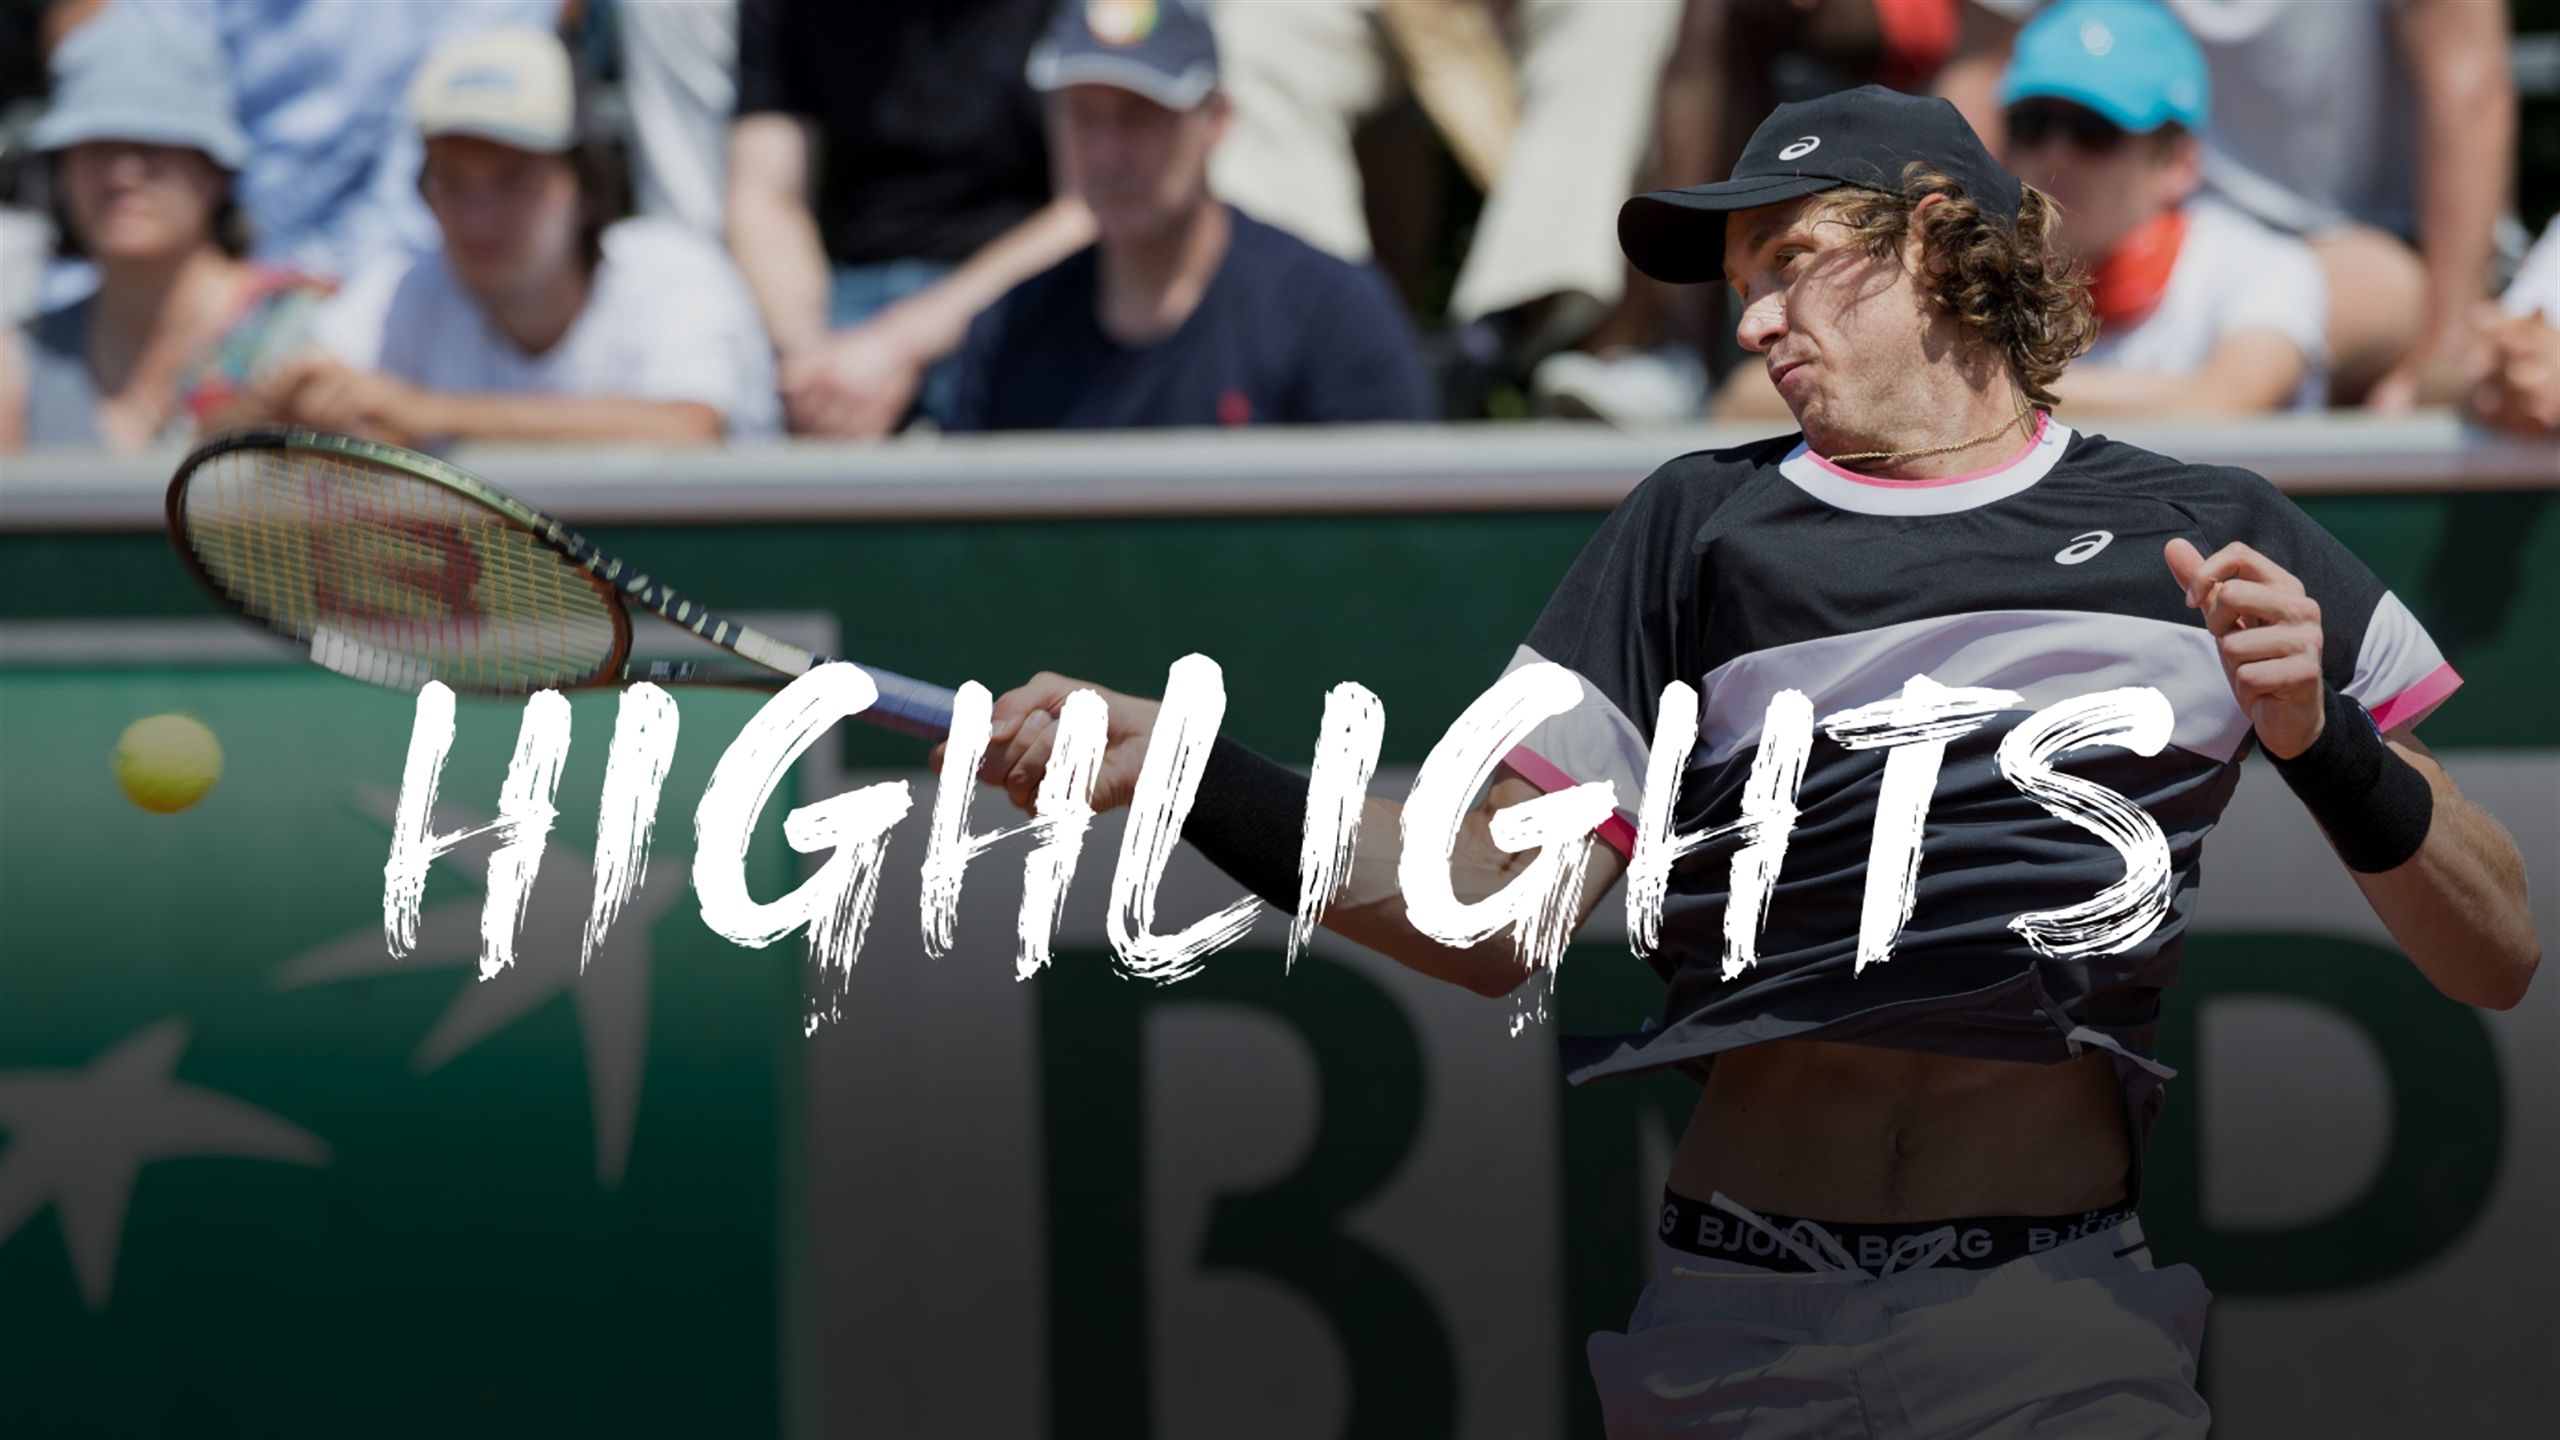 Tommy Paul v Nicolas Jarry - Roland-Garros highlights - Tennis video